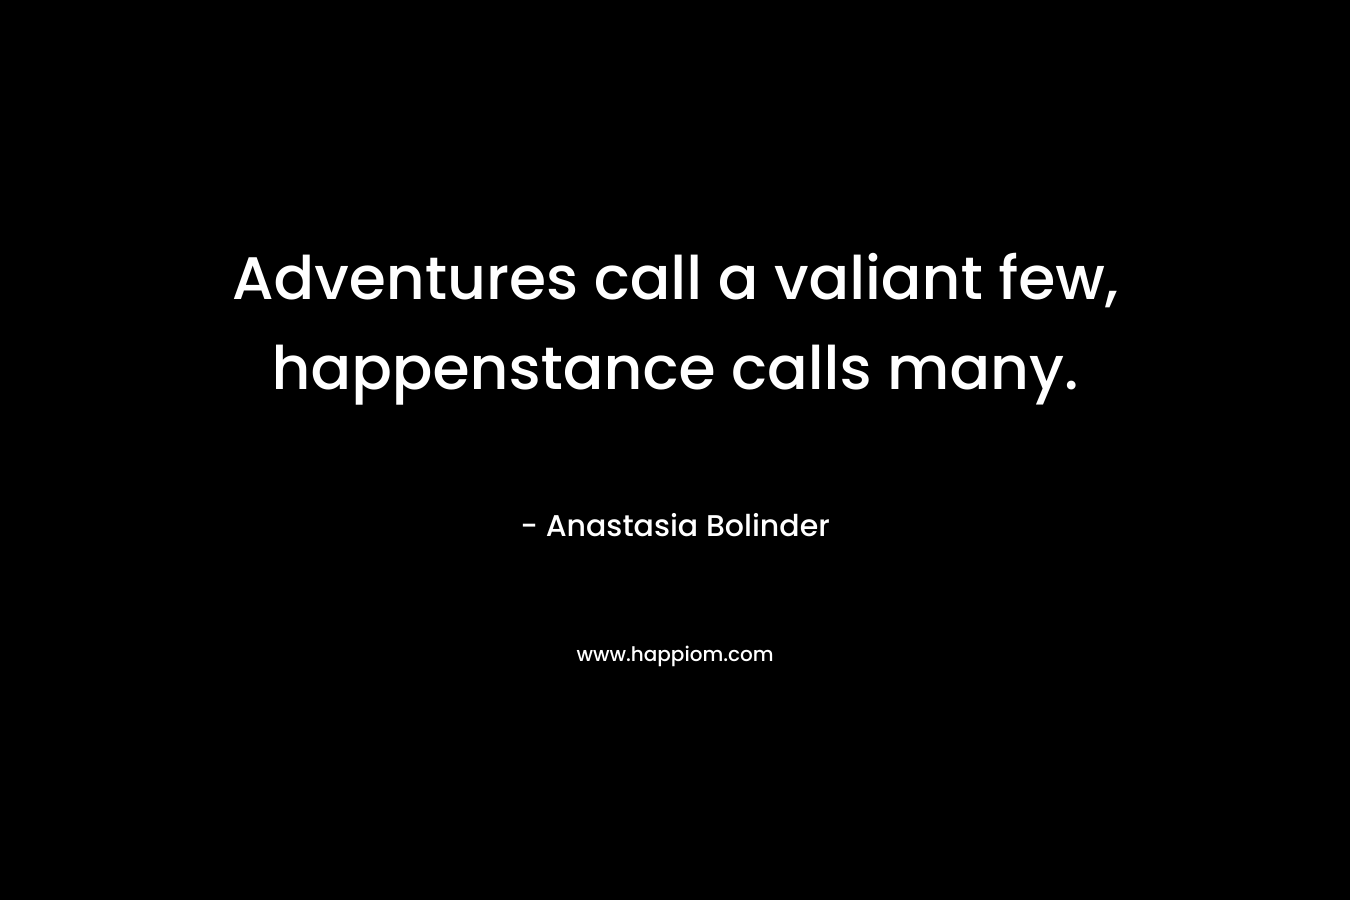 Adventures call a valiant few, happenstance calls many.